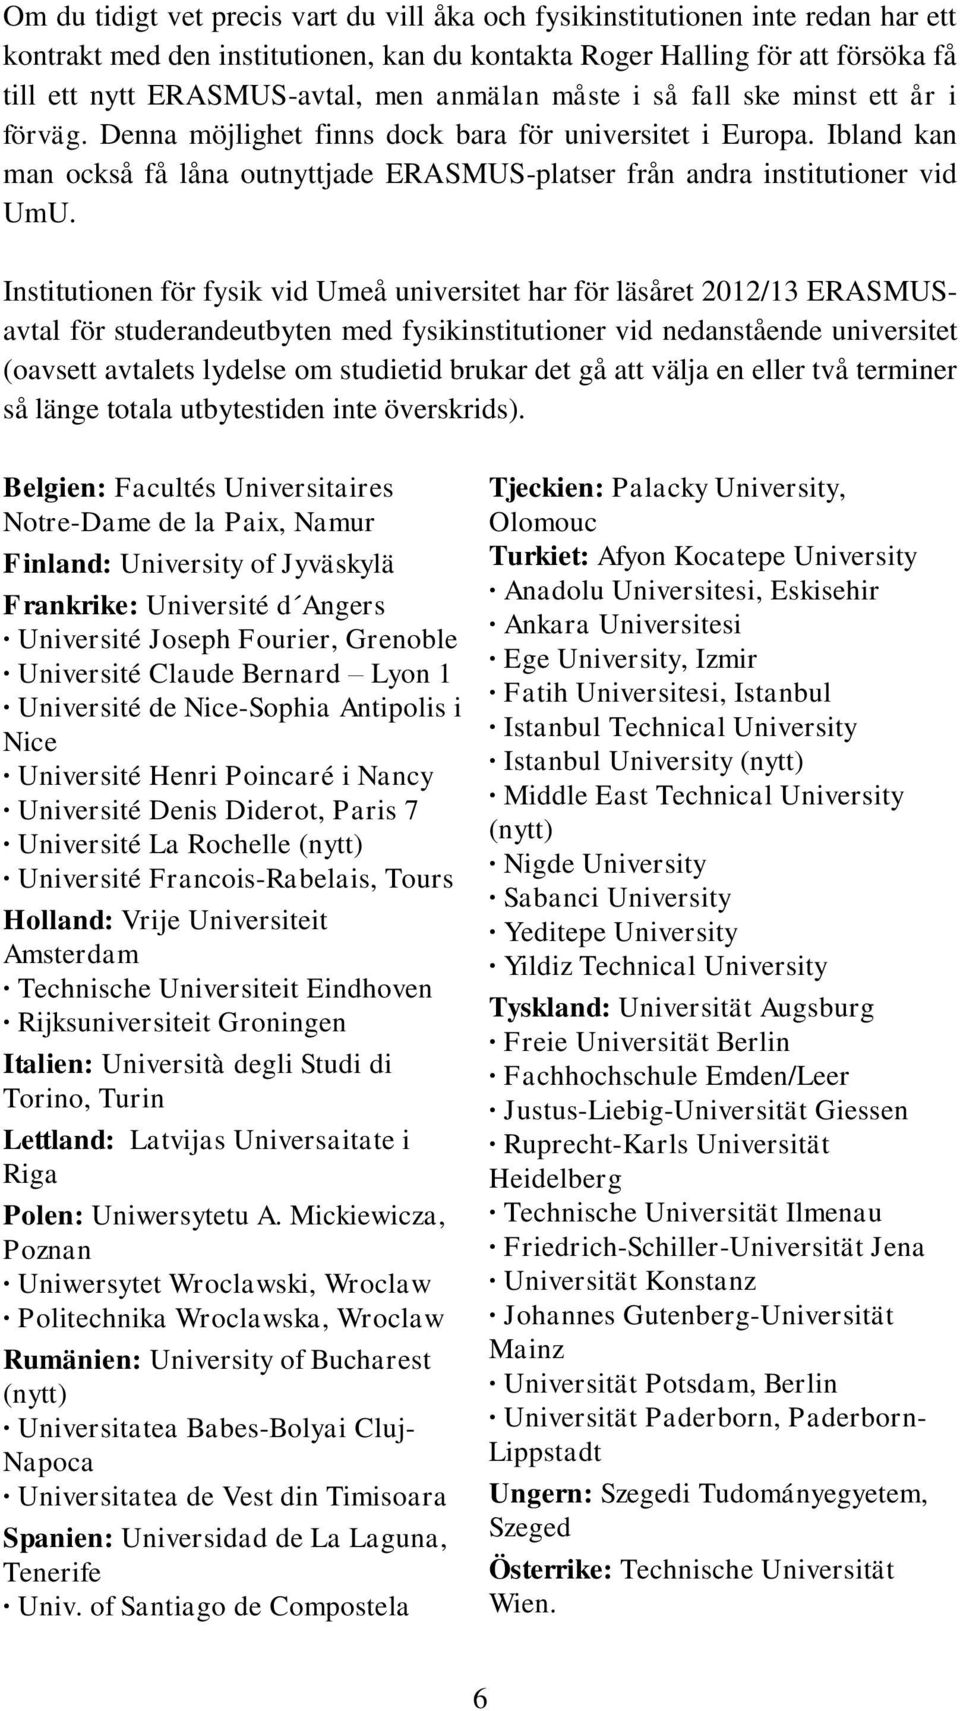 Institutionen för fysik vid Umeå universitet har för läsåret 2012/13 ERASMUSavtal för studerandeutbyten med fysikinstitutioner vid nedanstående universitet (oavsett avtalets lydelse om studietid